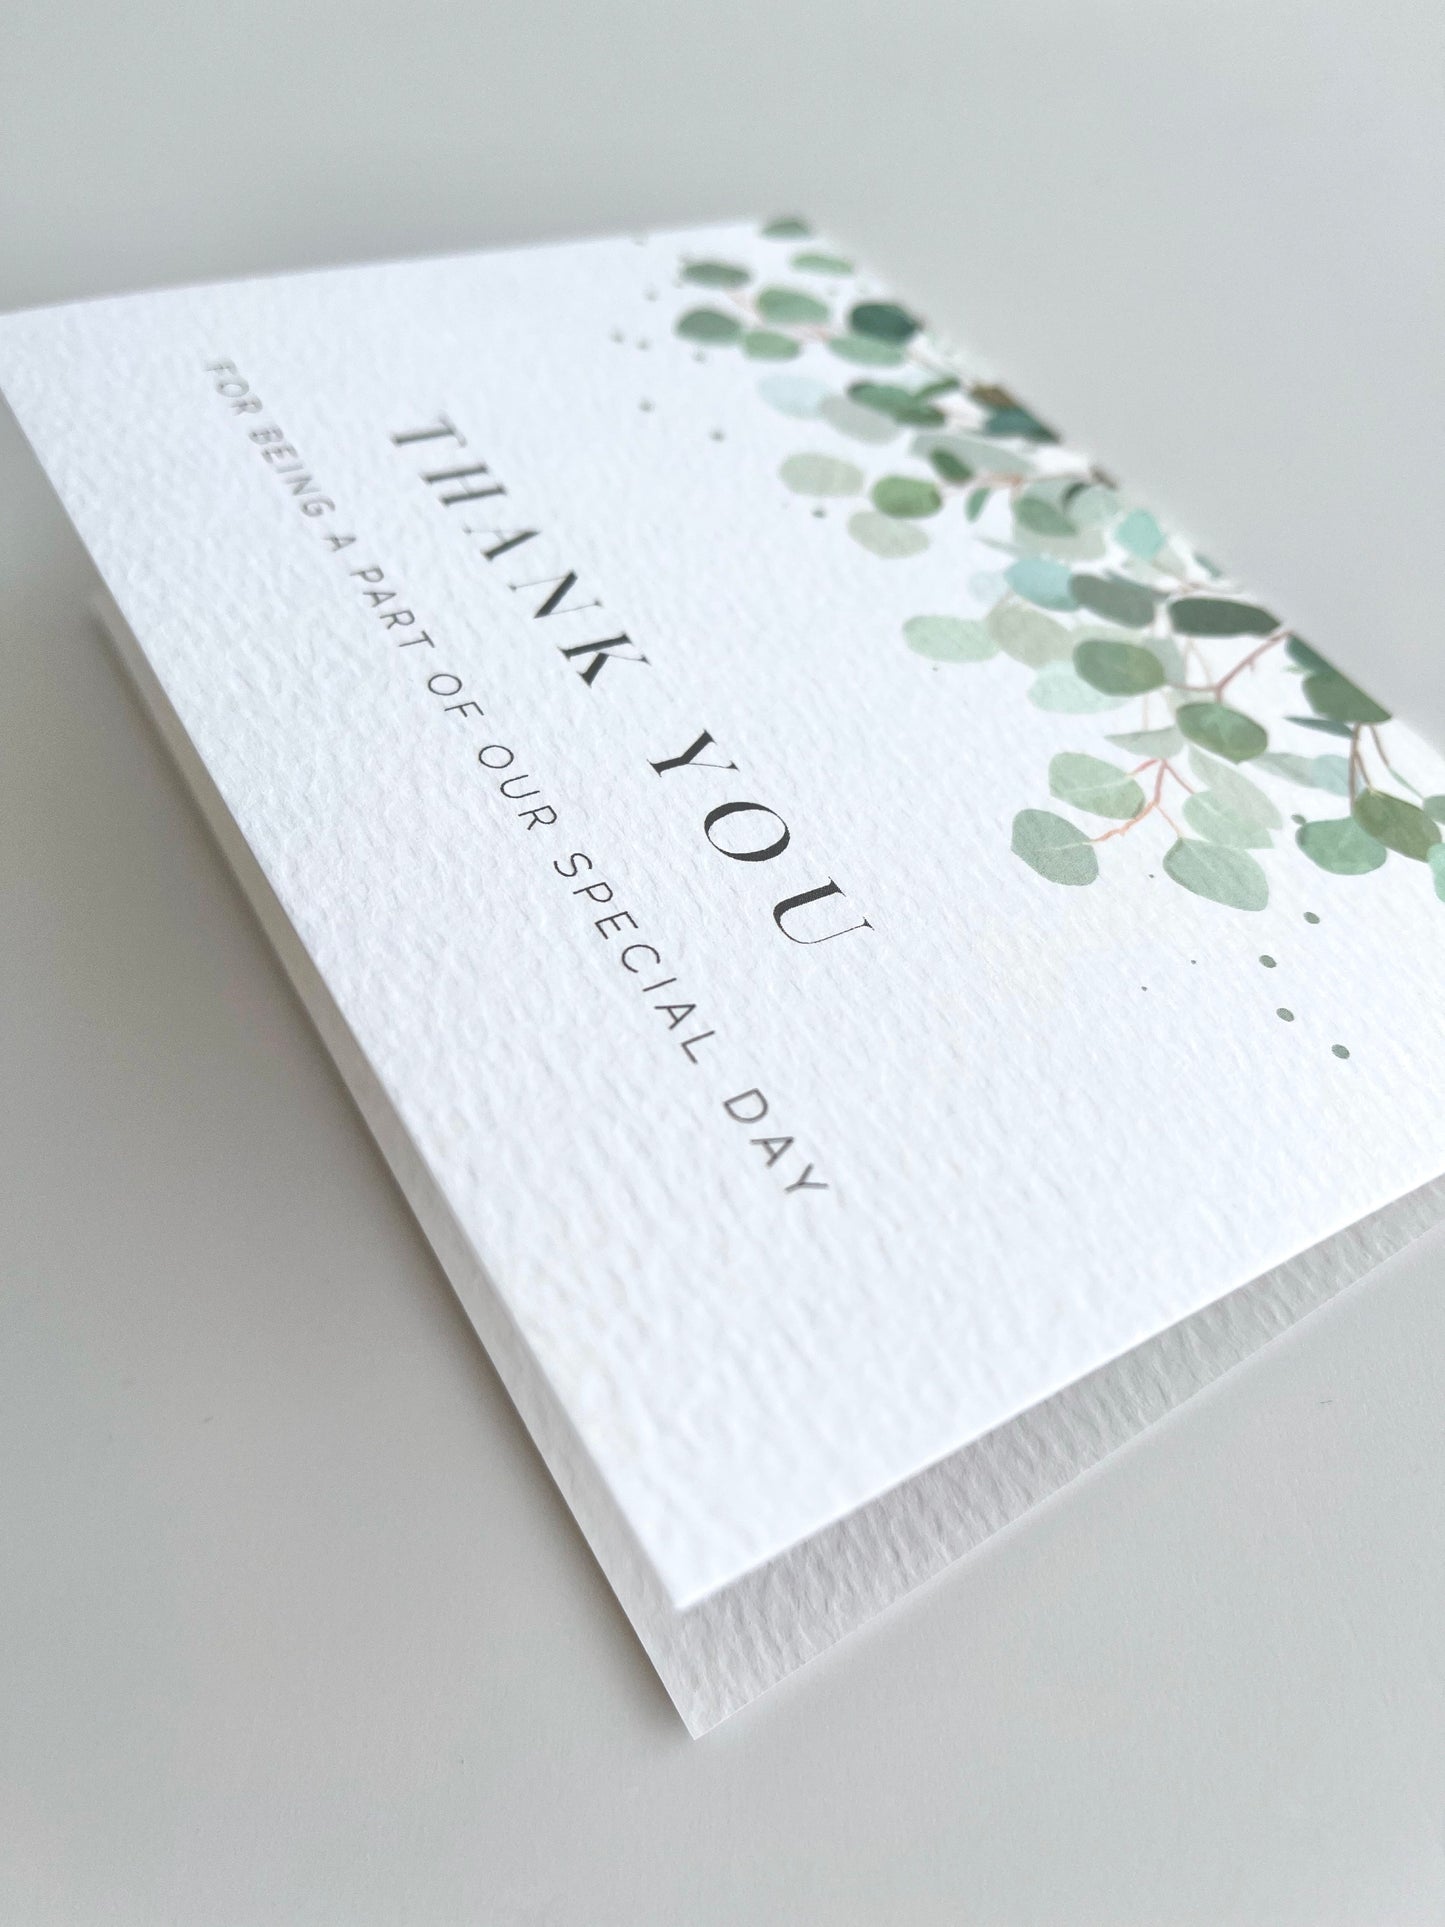 Eucalyptus Wedding Thank You Card